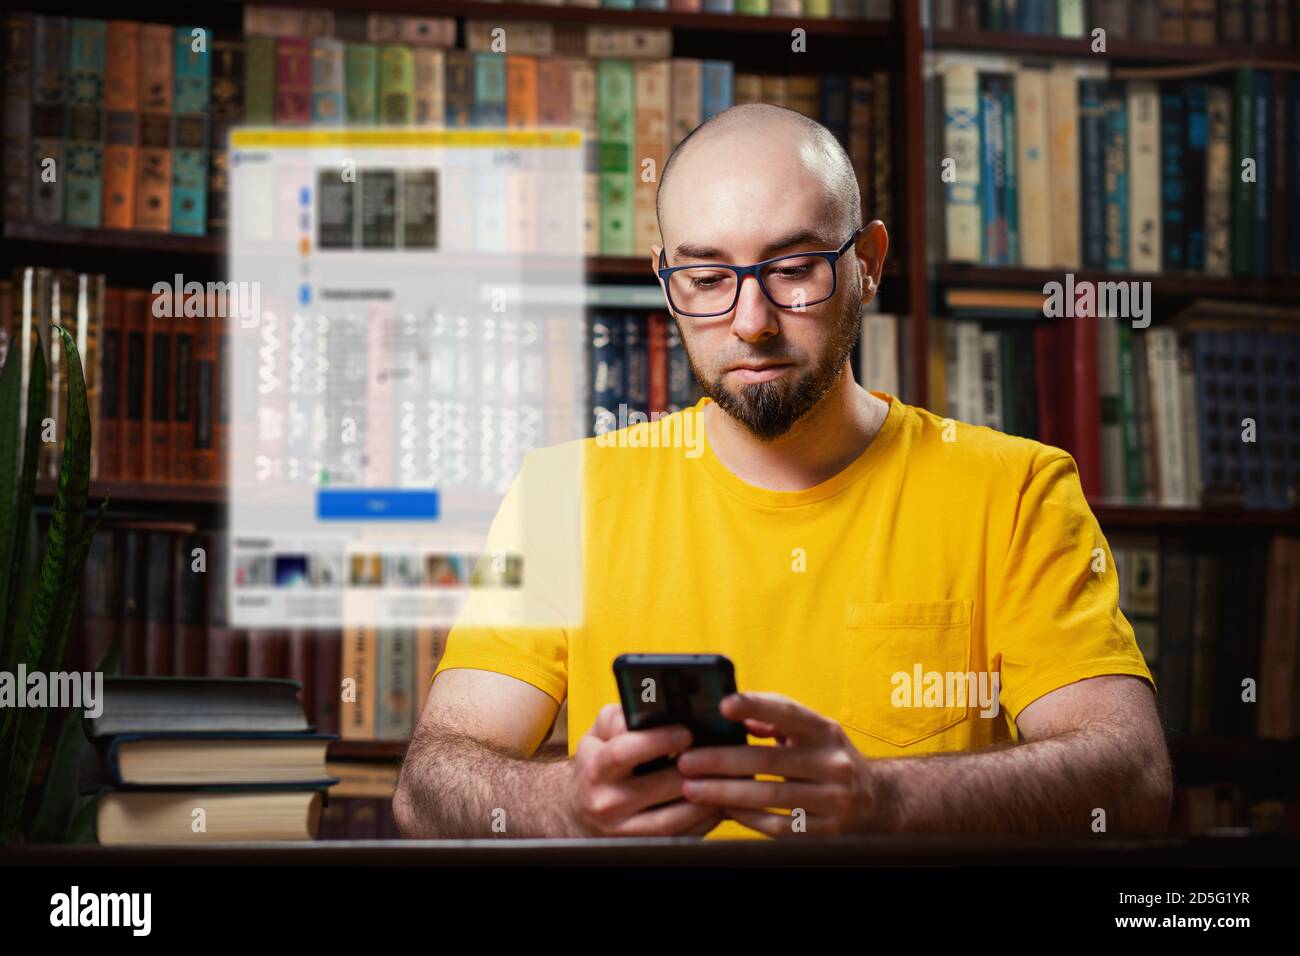 Red social. Un hombre calvo con gafas utiliza un smartphone. Ventana de borrado digital sobre el teléfono. Hay estantes de libros en el fondo. El contras Foto de stock